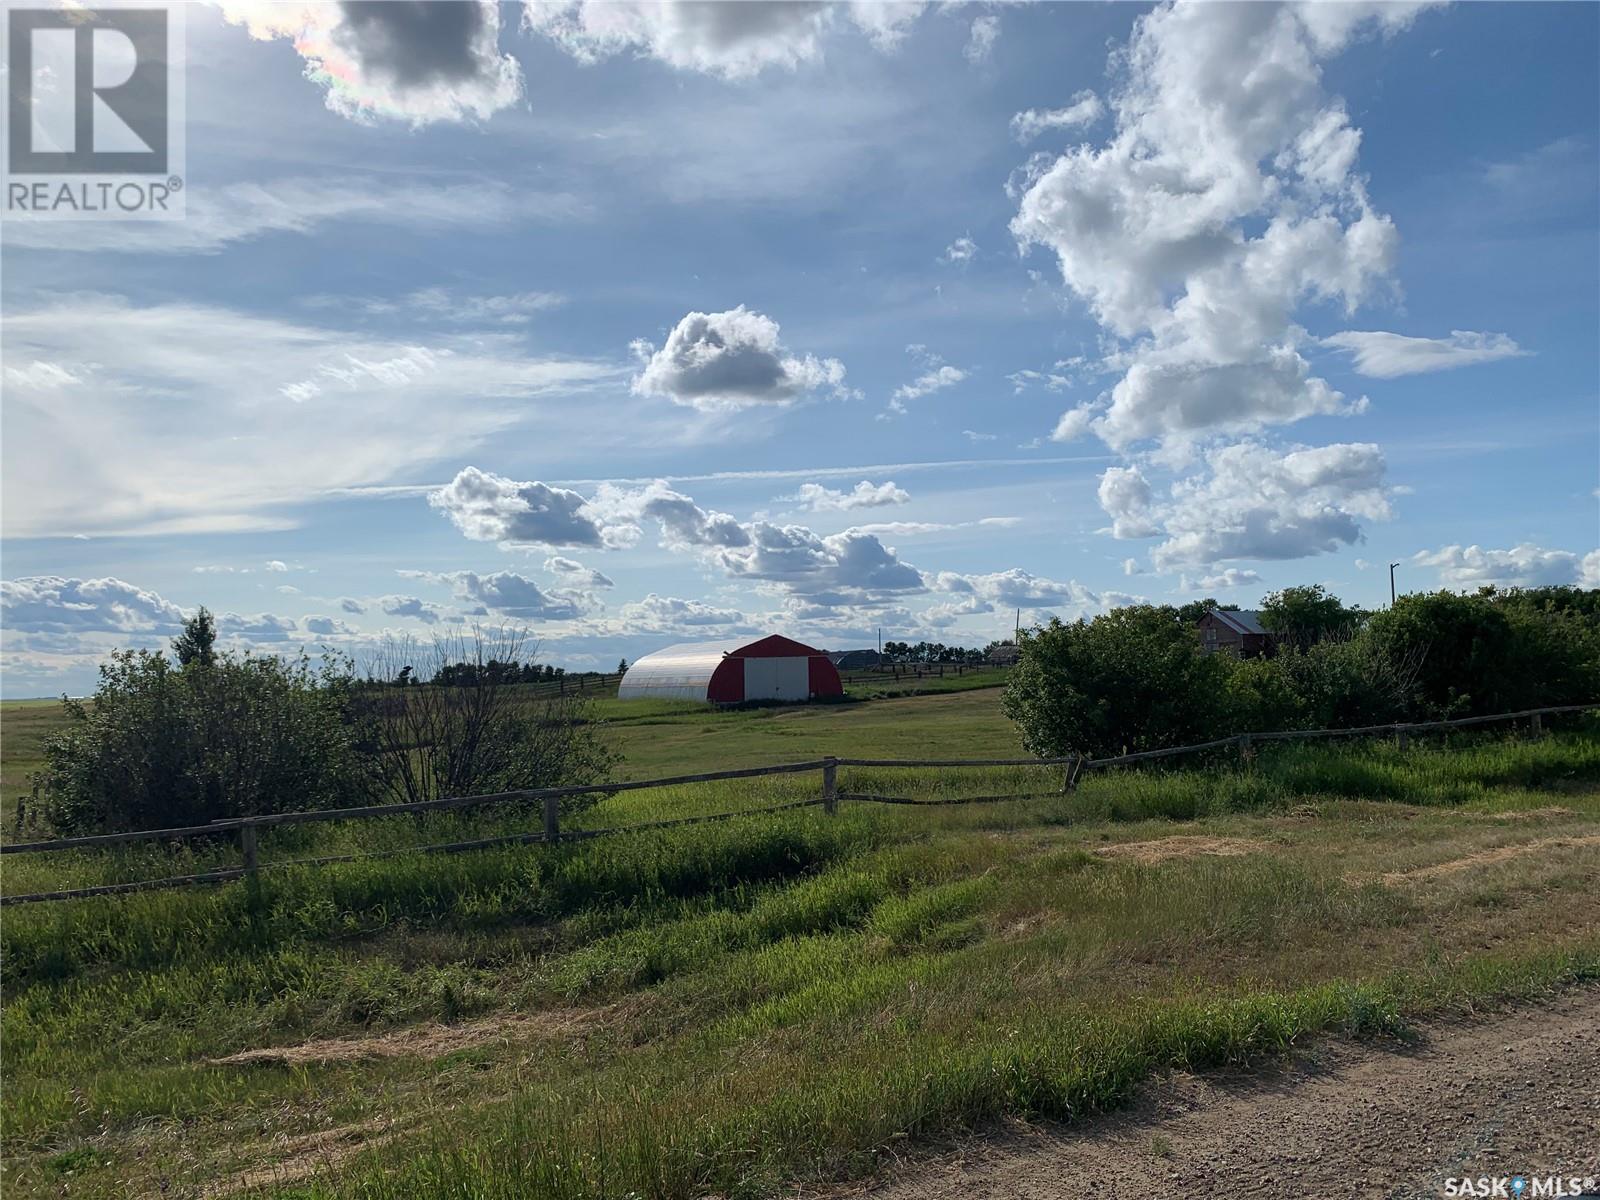 Rode Farm, excelsior rm no. 166, Saskatchewan